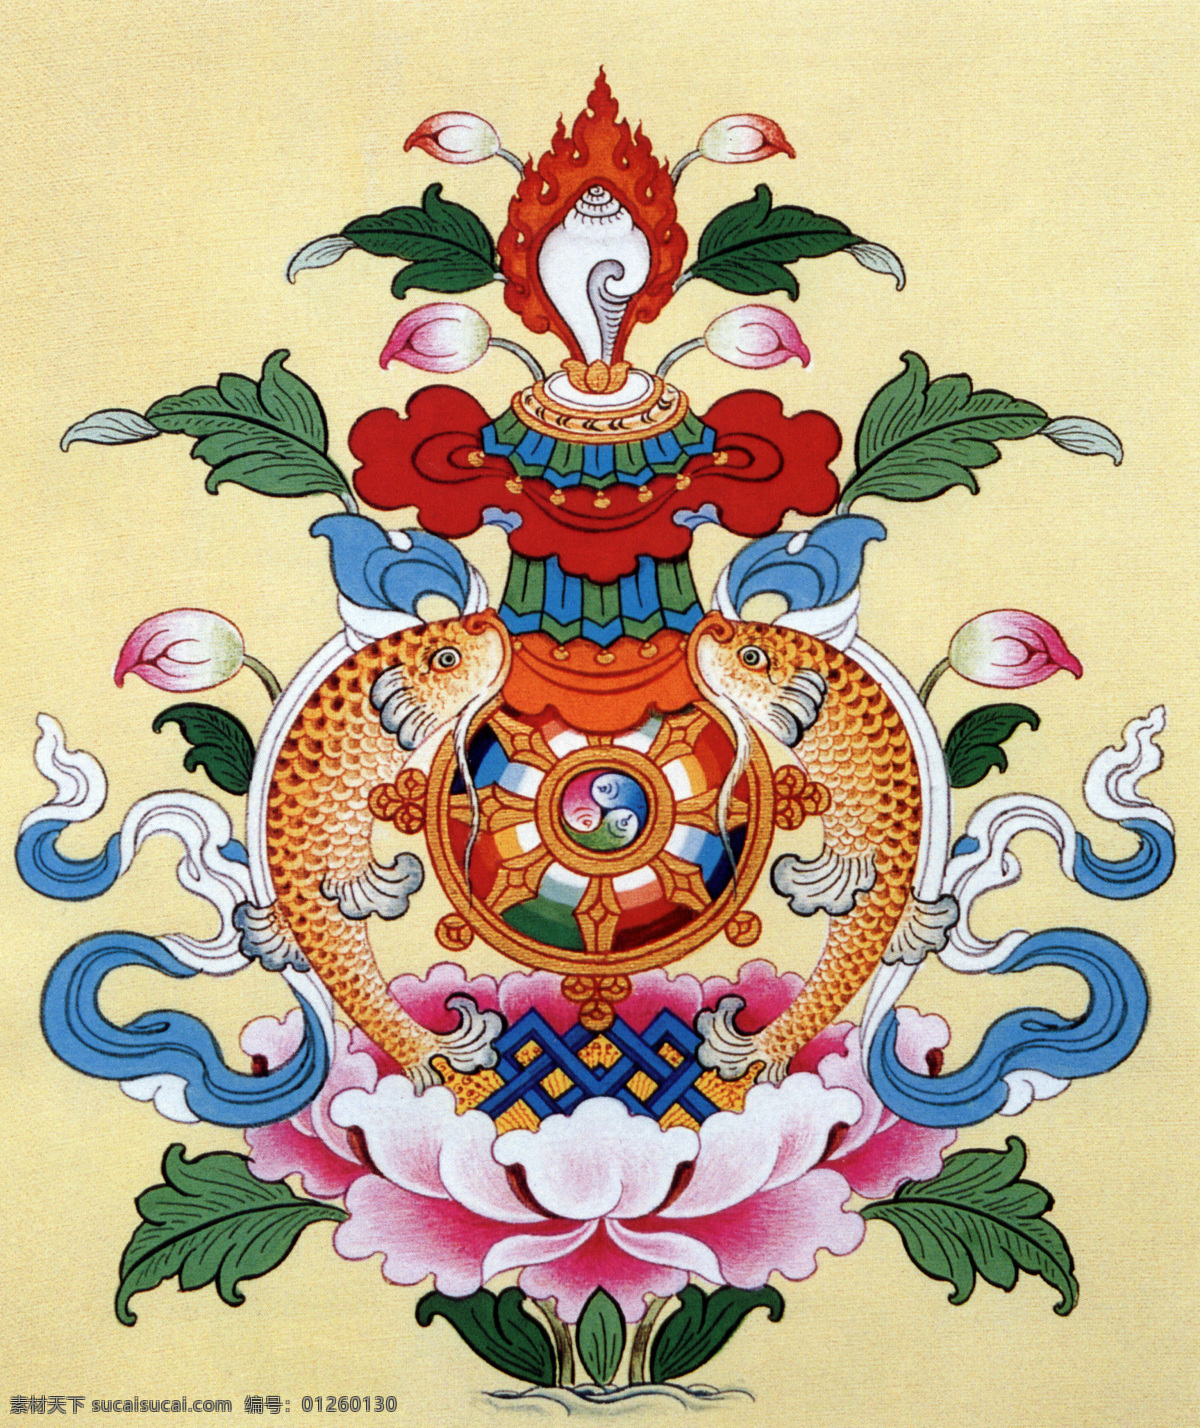 吉祥八宝 西藏美术 藏式图案 藏式壁画 藏式背景墙画 藏式图 文化艺术 传统文化 jp